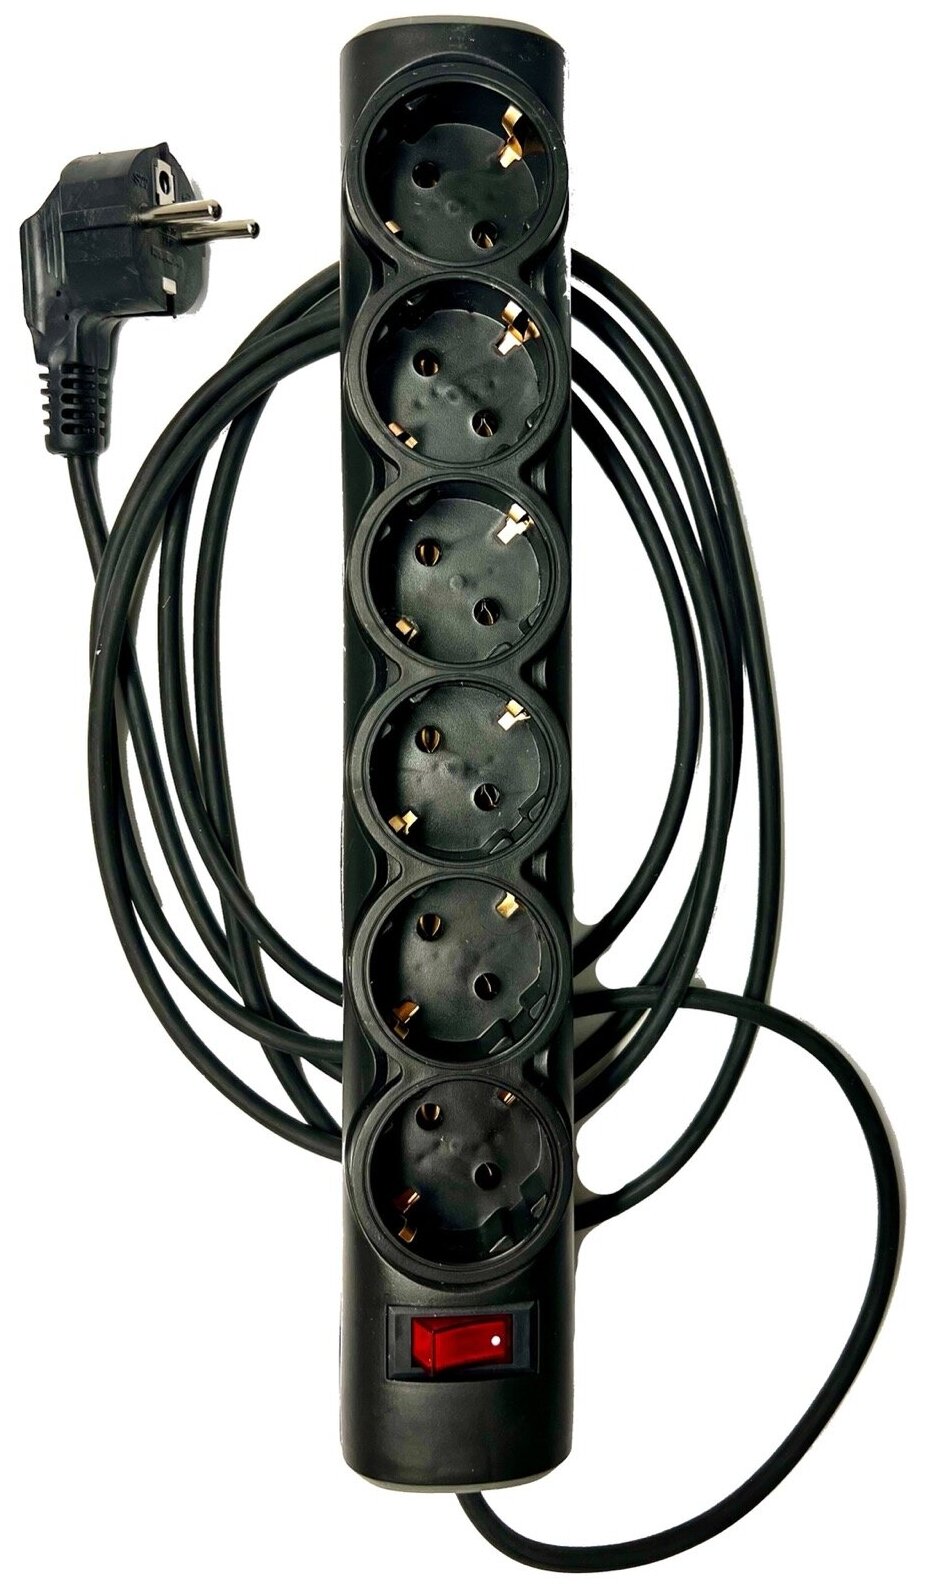 Сетевой фильтр-удлинитель ДИП, 6 розеток с заземлением , выключатель, провод ПВС 3х0,75 мм2, длина 2 метра